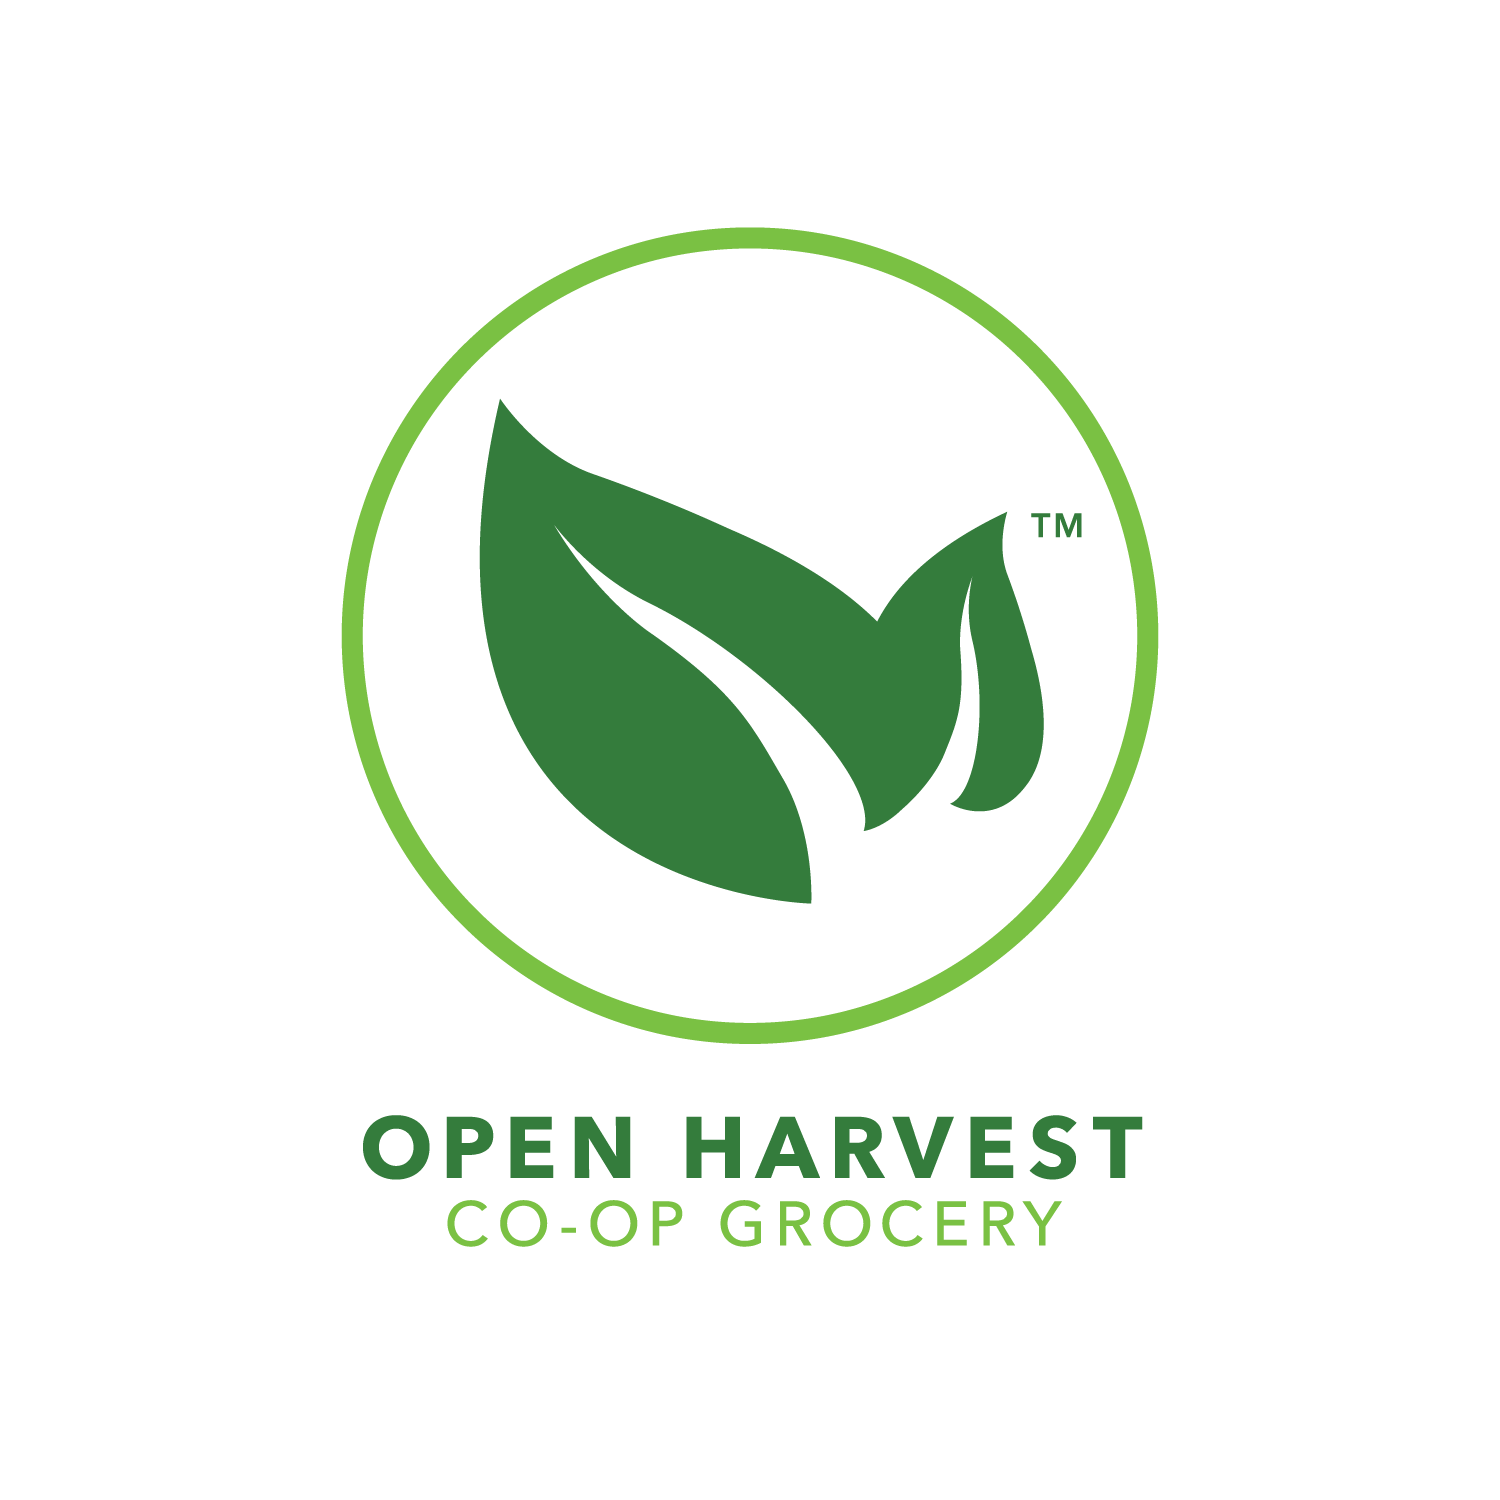 Open Harvest Co-op Grocery Logo